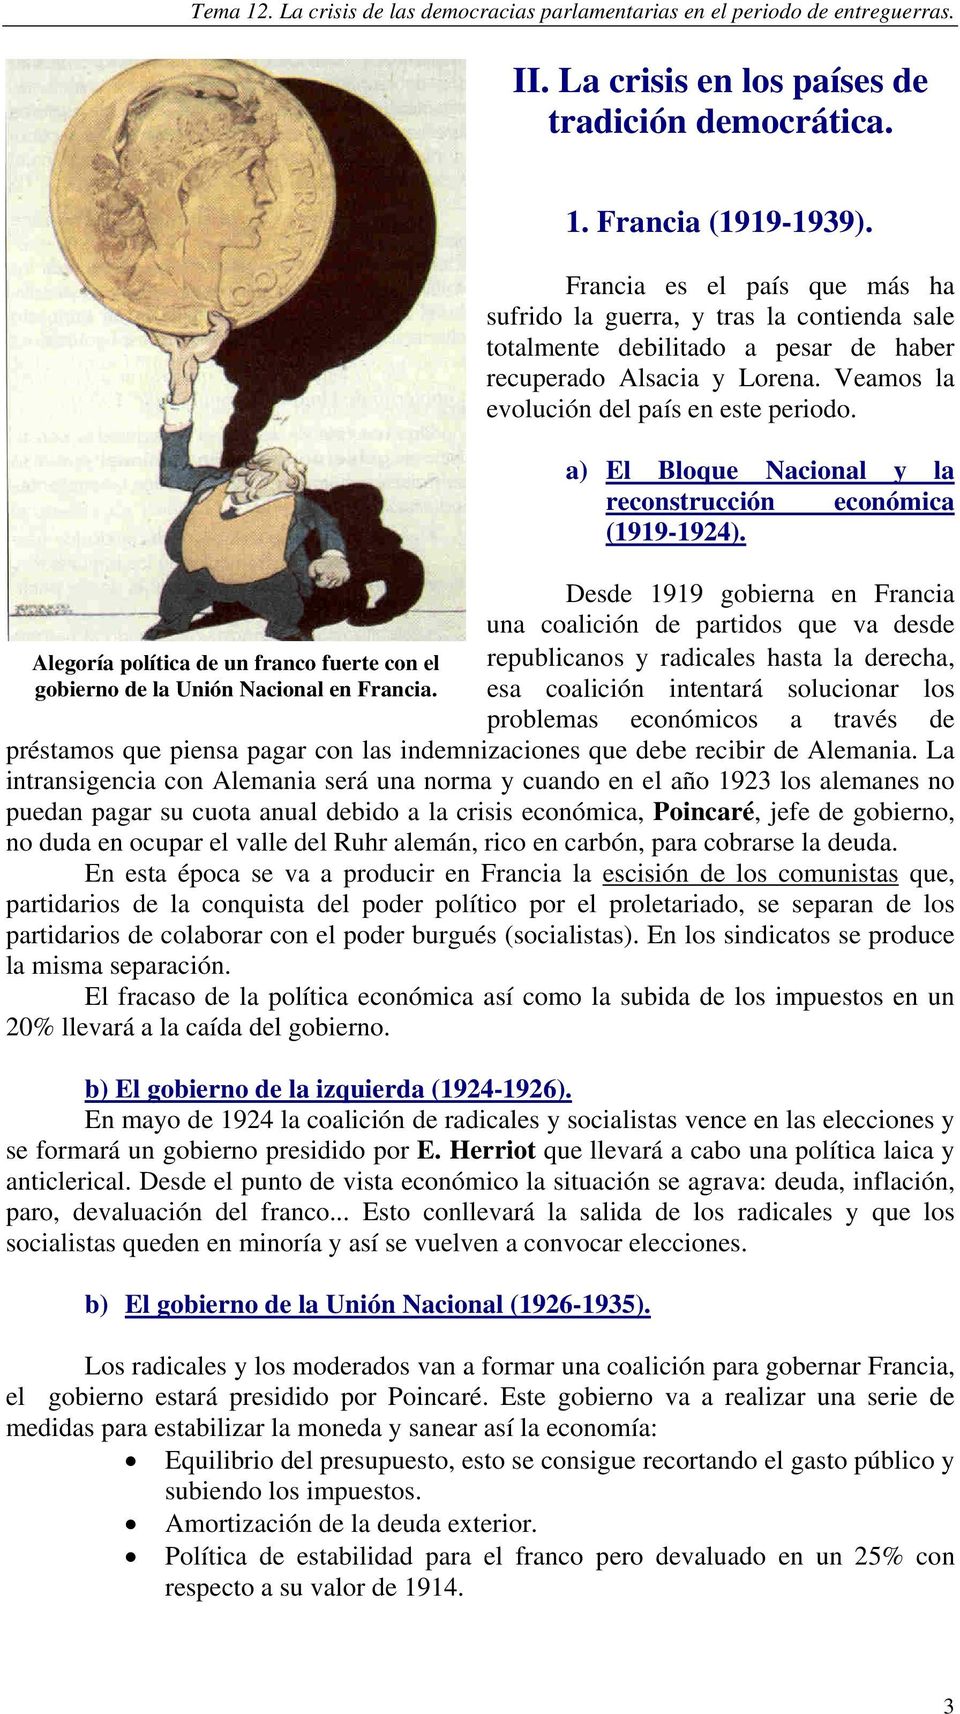 a) El Bloque Nacional y la reconstrucción económica (1919-1924).